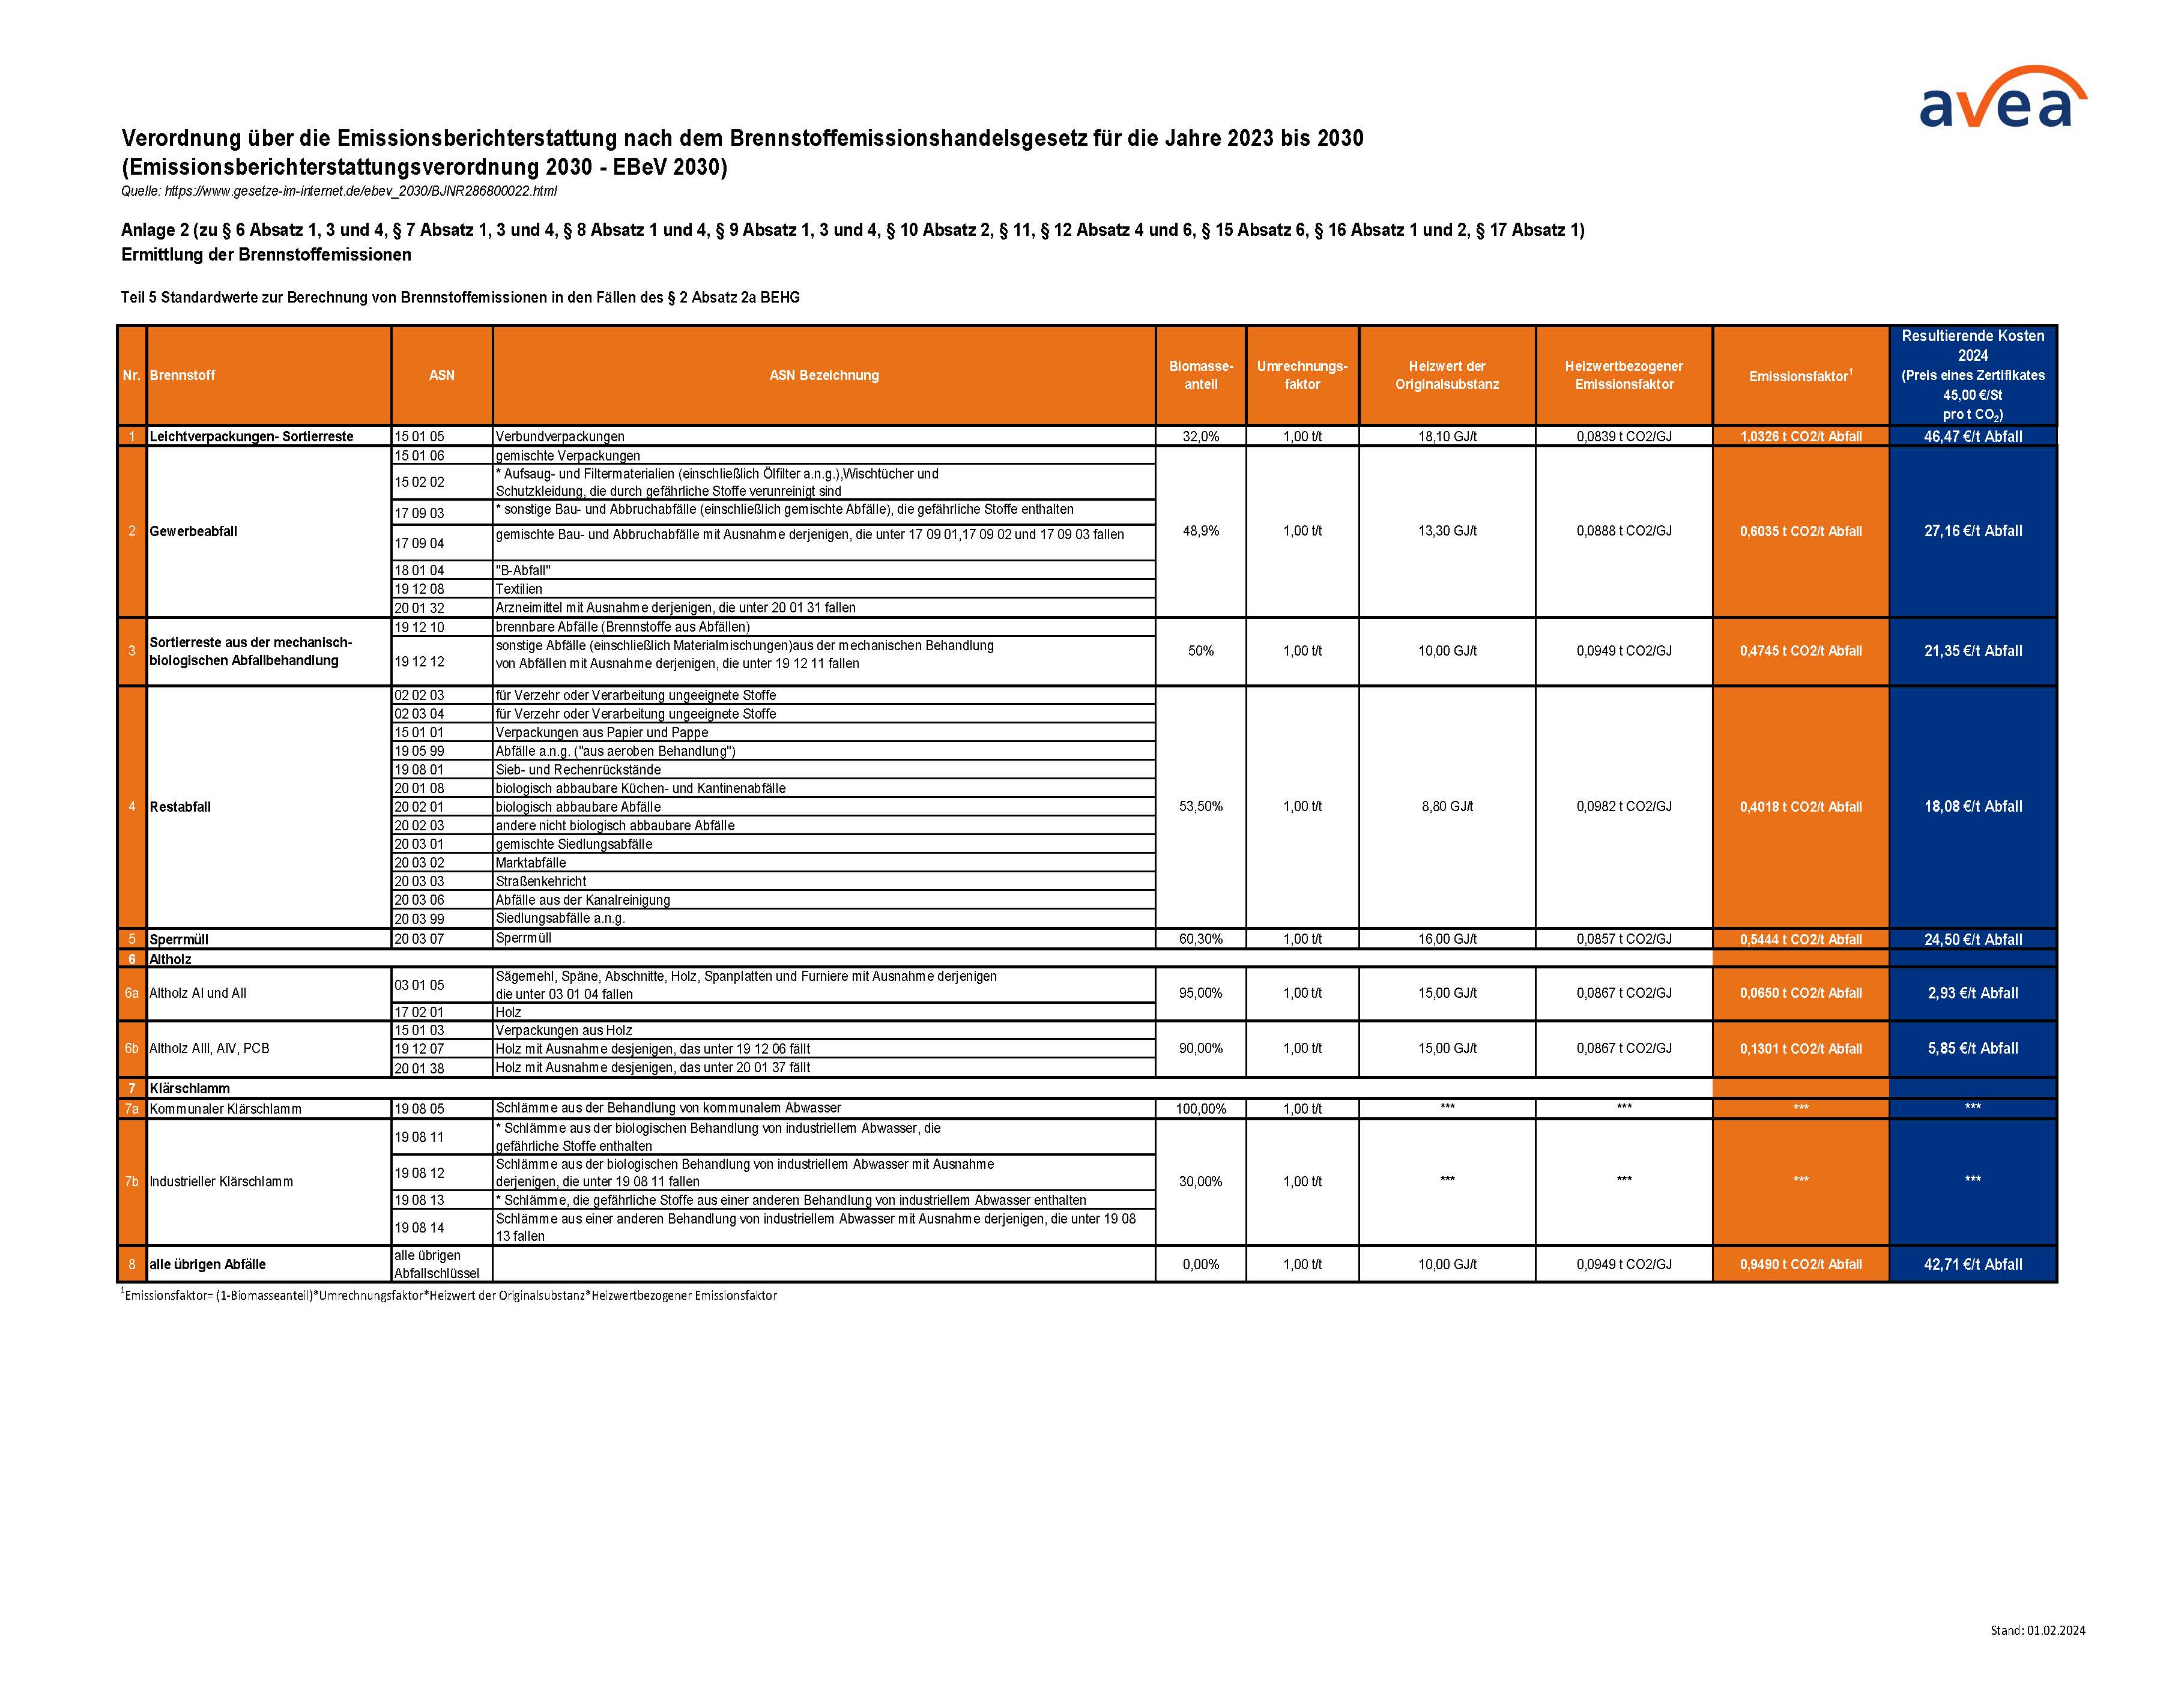 BEHG - Brennstoffemissionshandelsgesetz Tabelle